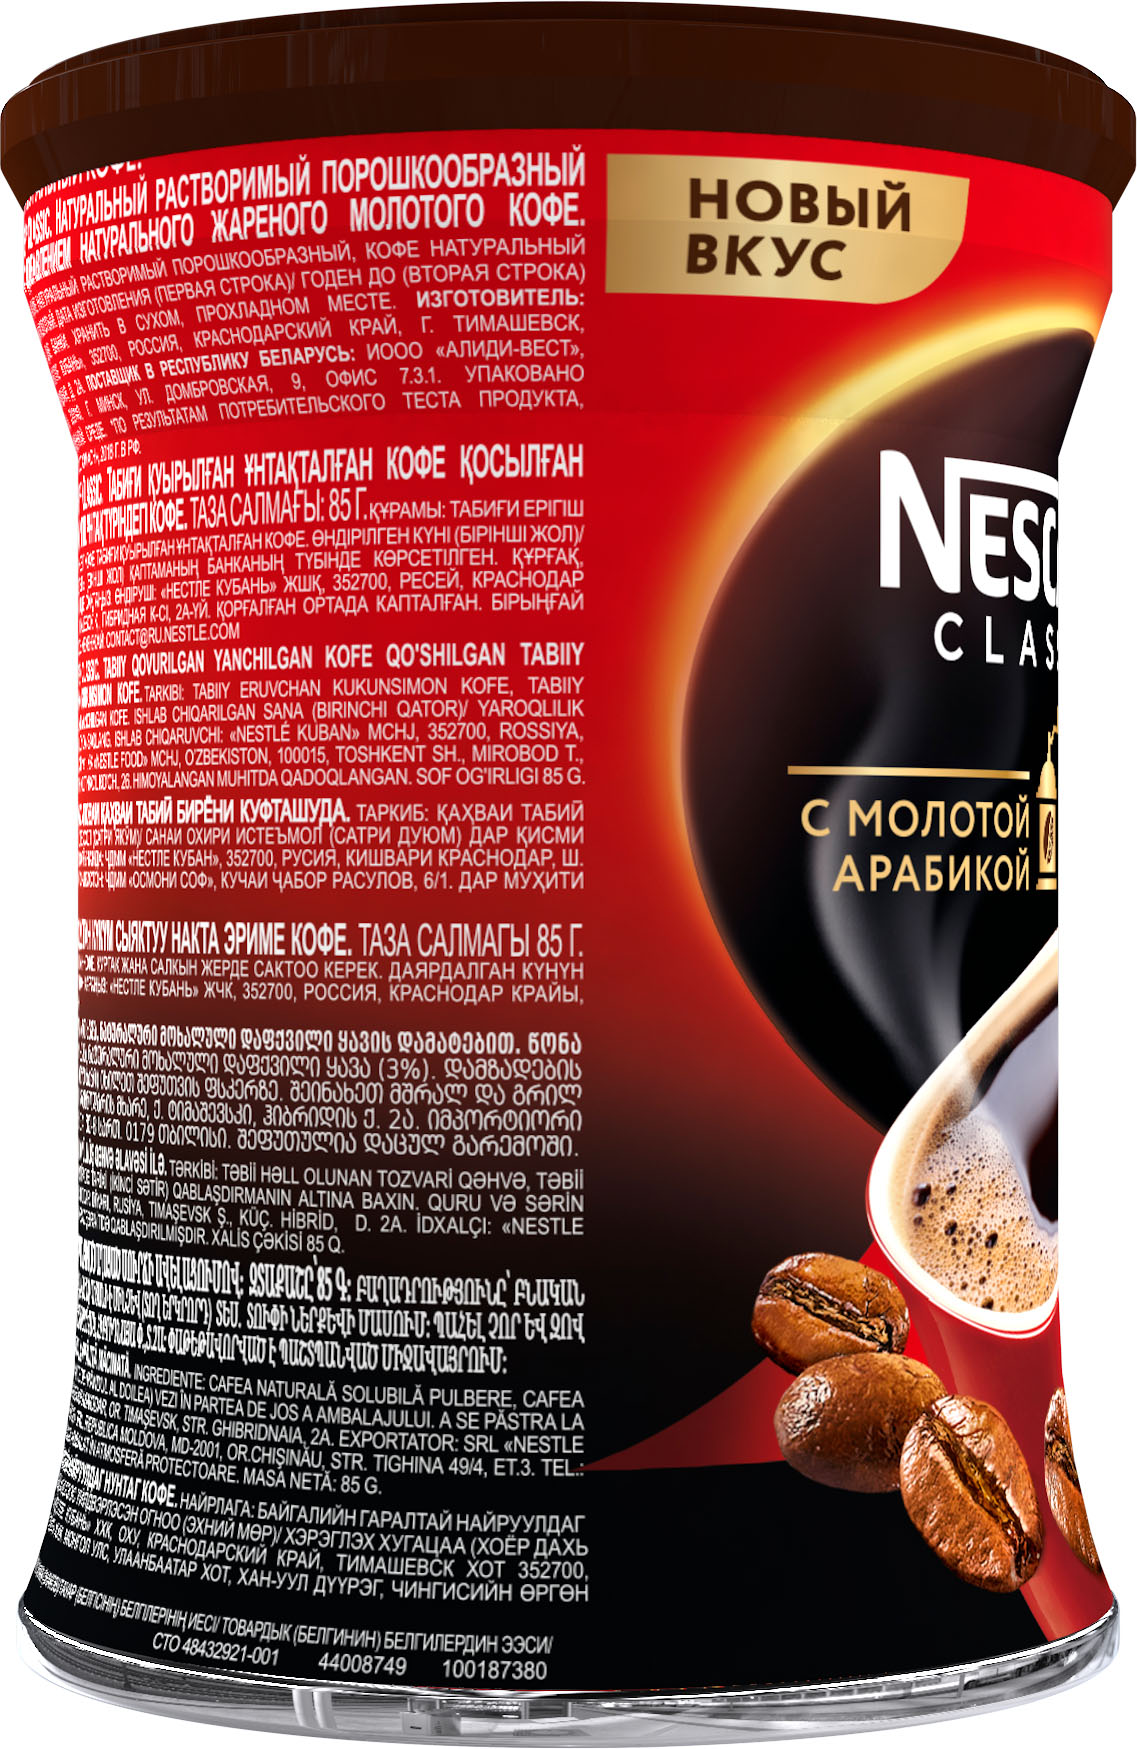 Мелющий кофе нескафе. Кофе Нескафе Классик Арабика 85г жб. Кофе Нескафе Классик (85 гр, ж/б). Кофе Нескафе Классик молотый с арабикой. Нескафе Классик 85 грамм.